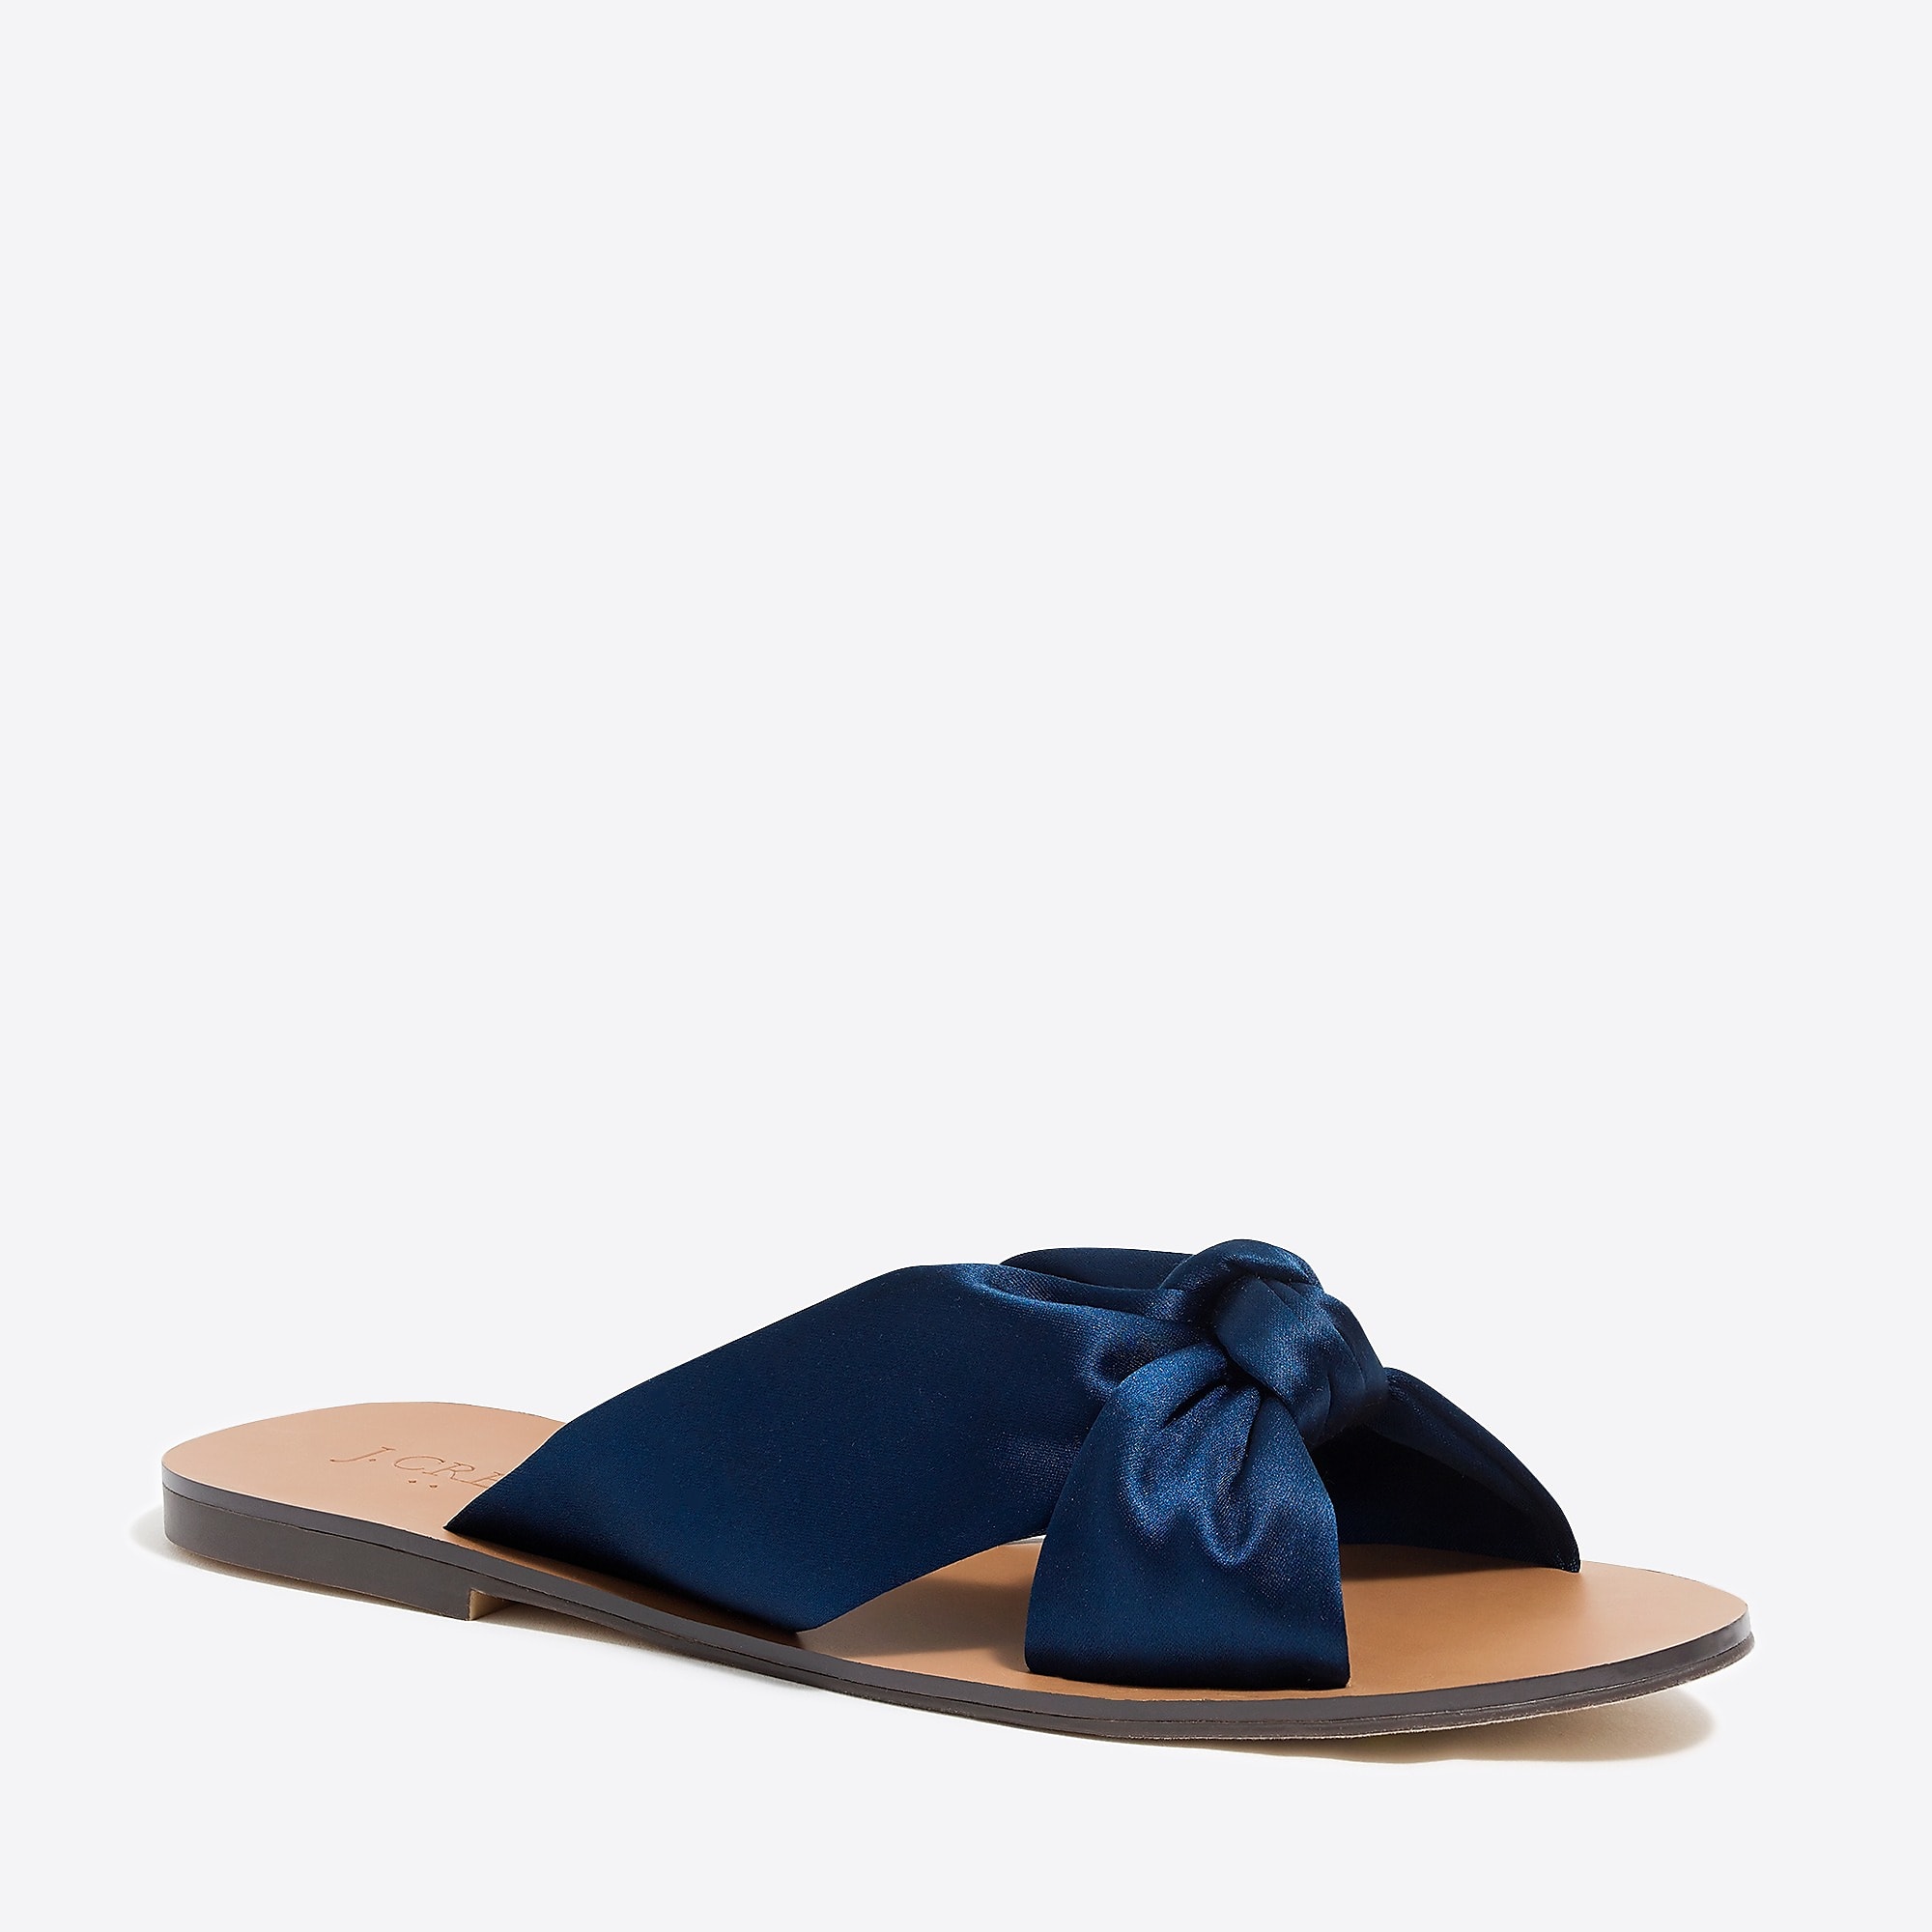 Navy Blue Satin Knotted Slide Sandals